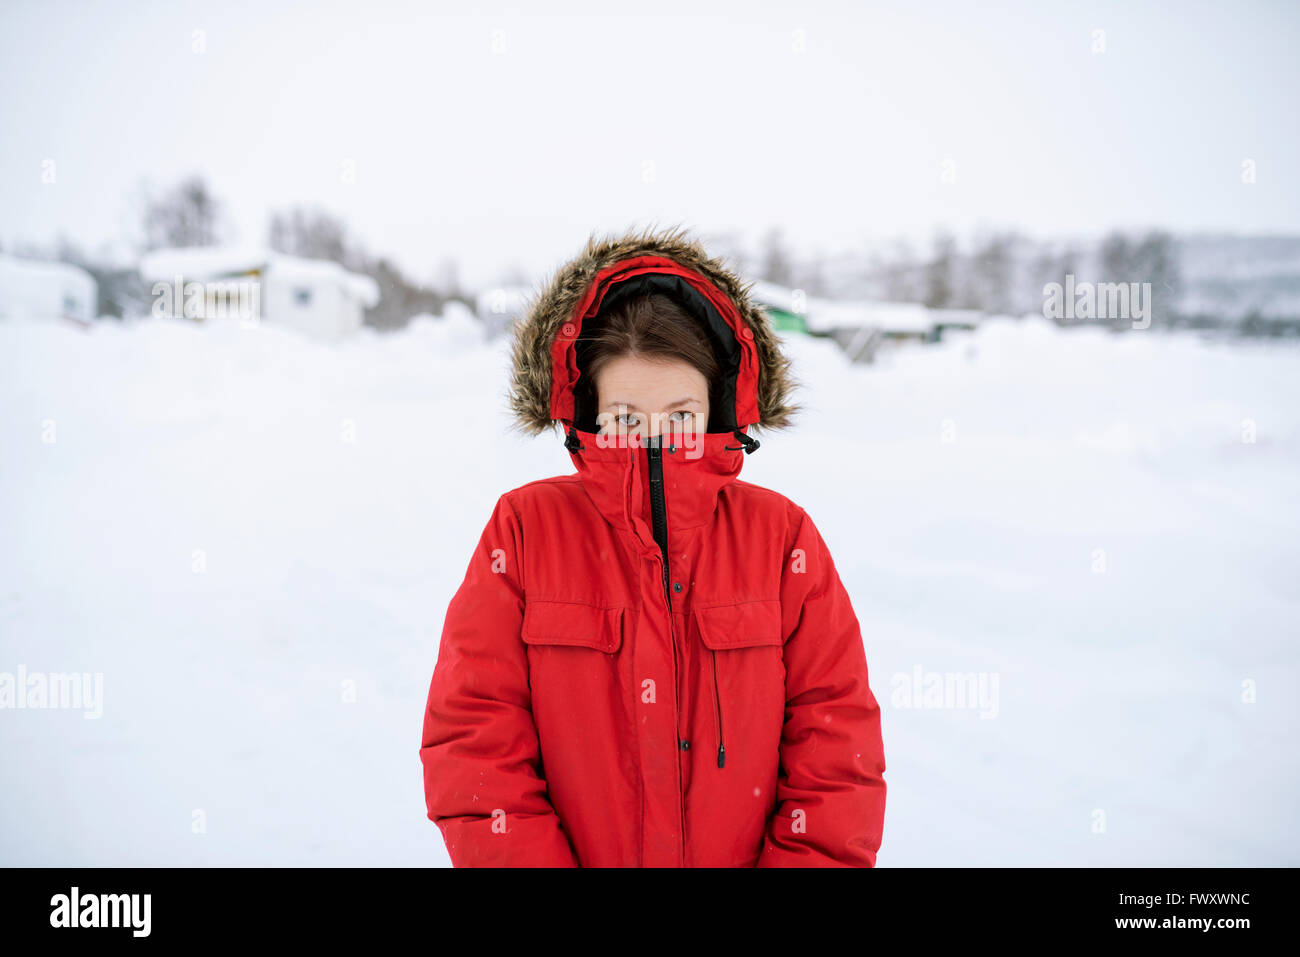 Schweden, Lappland, Hemavan, Porträt der jungen Frau mit roten Parka im  winter Stockfotografie - Alamy